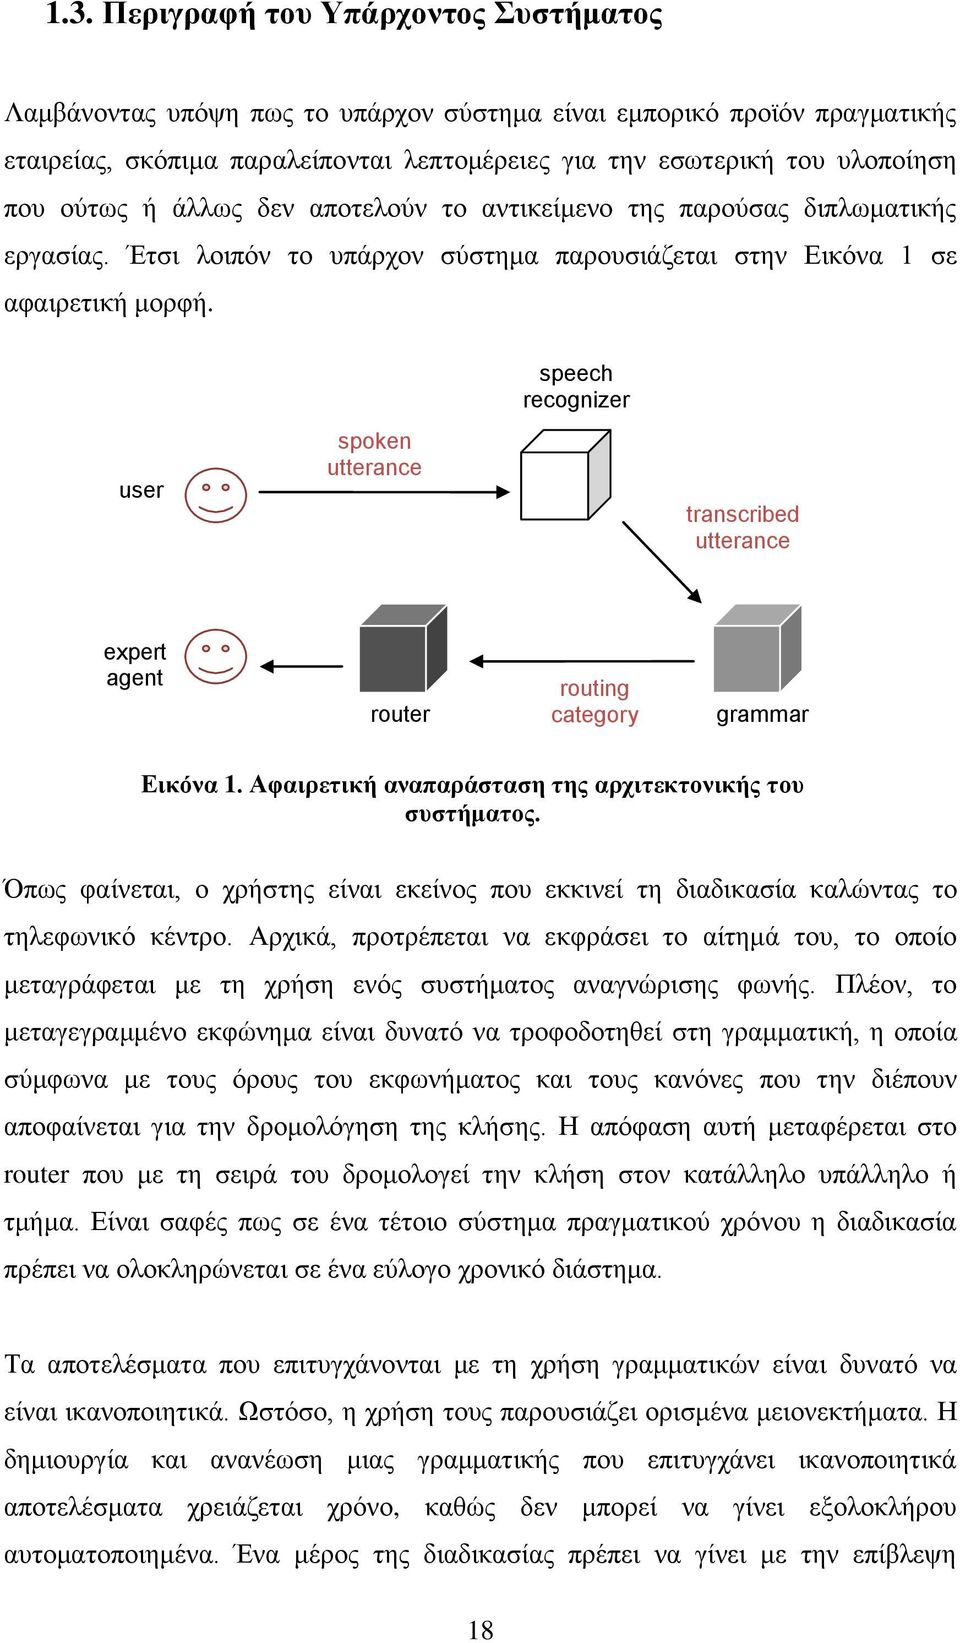 speech recognizer user spoken utterance transcribed utterance expert agent router routing category grammar Εικόνα 1. Αφαιρετική αναπαράσταση της αρχιτεκτονικής του συστήματος.